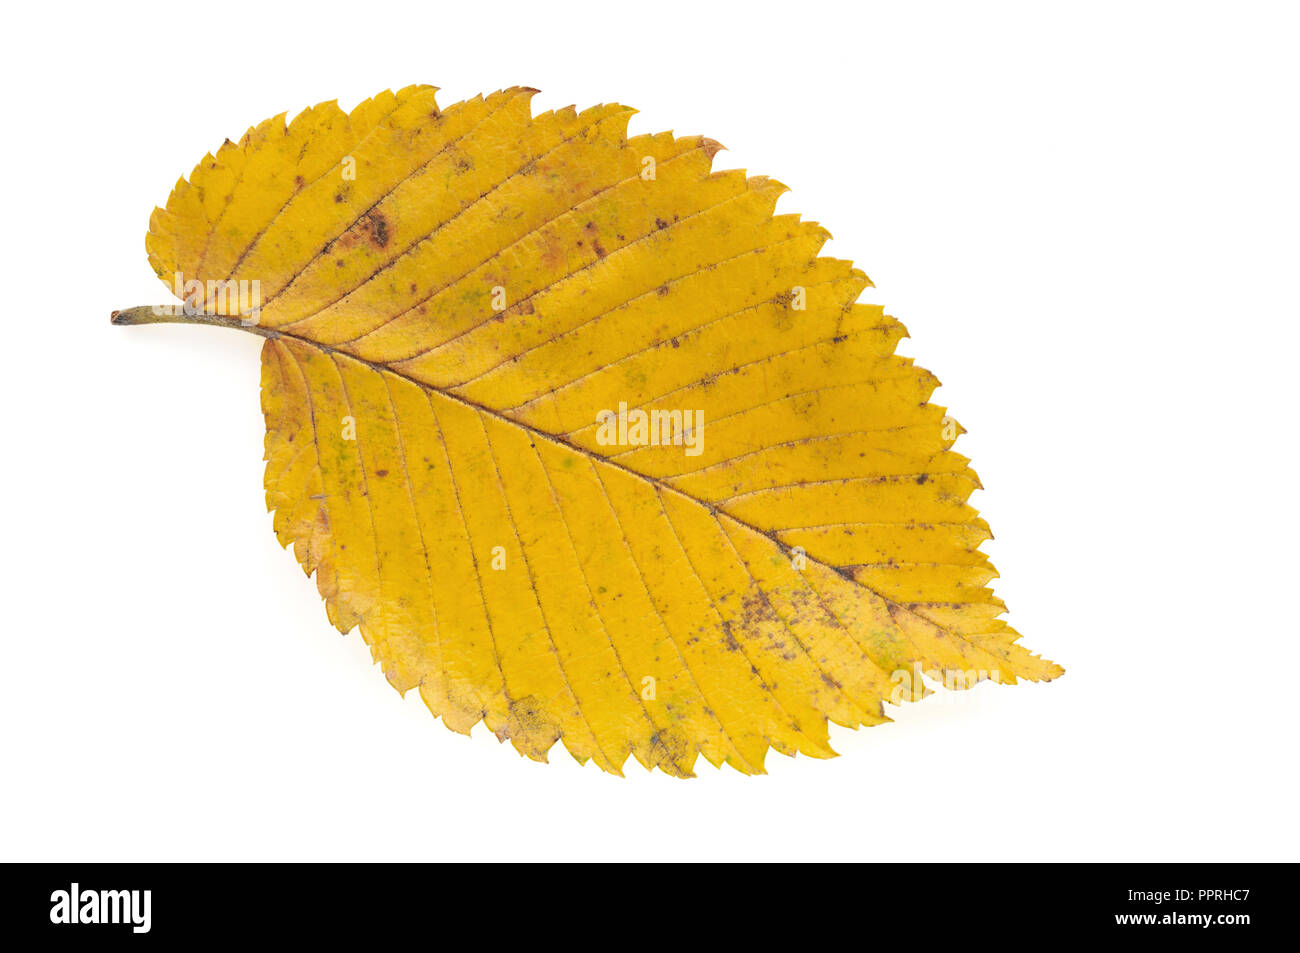 Autumn elm tree leaf isolated on white background Stock Photo